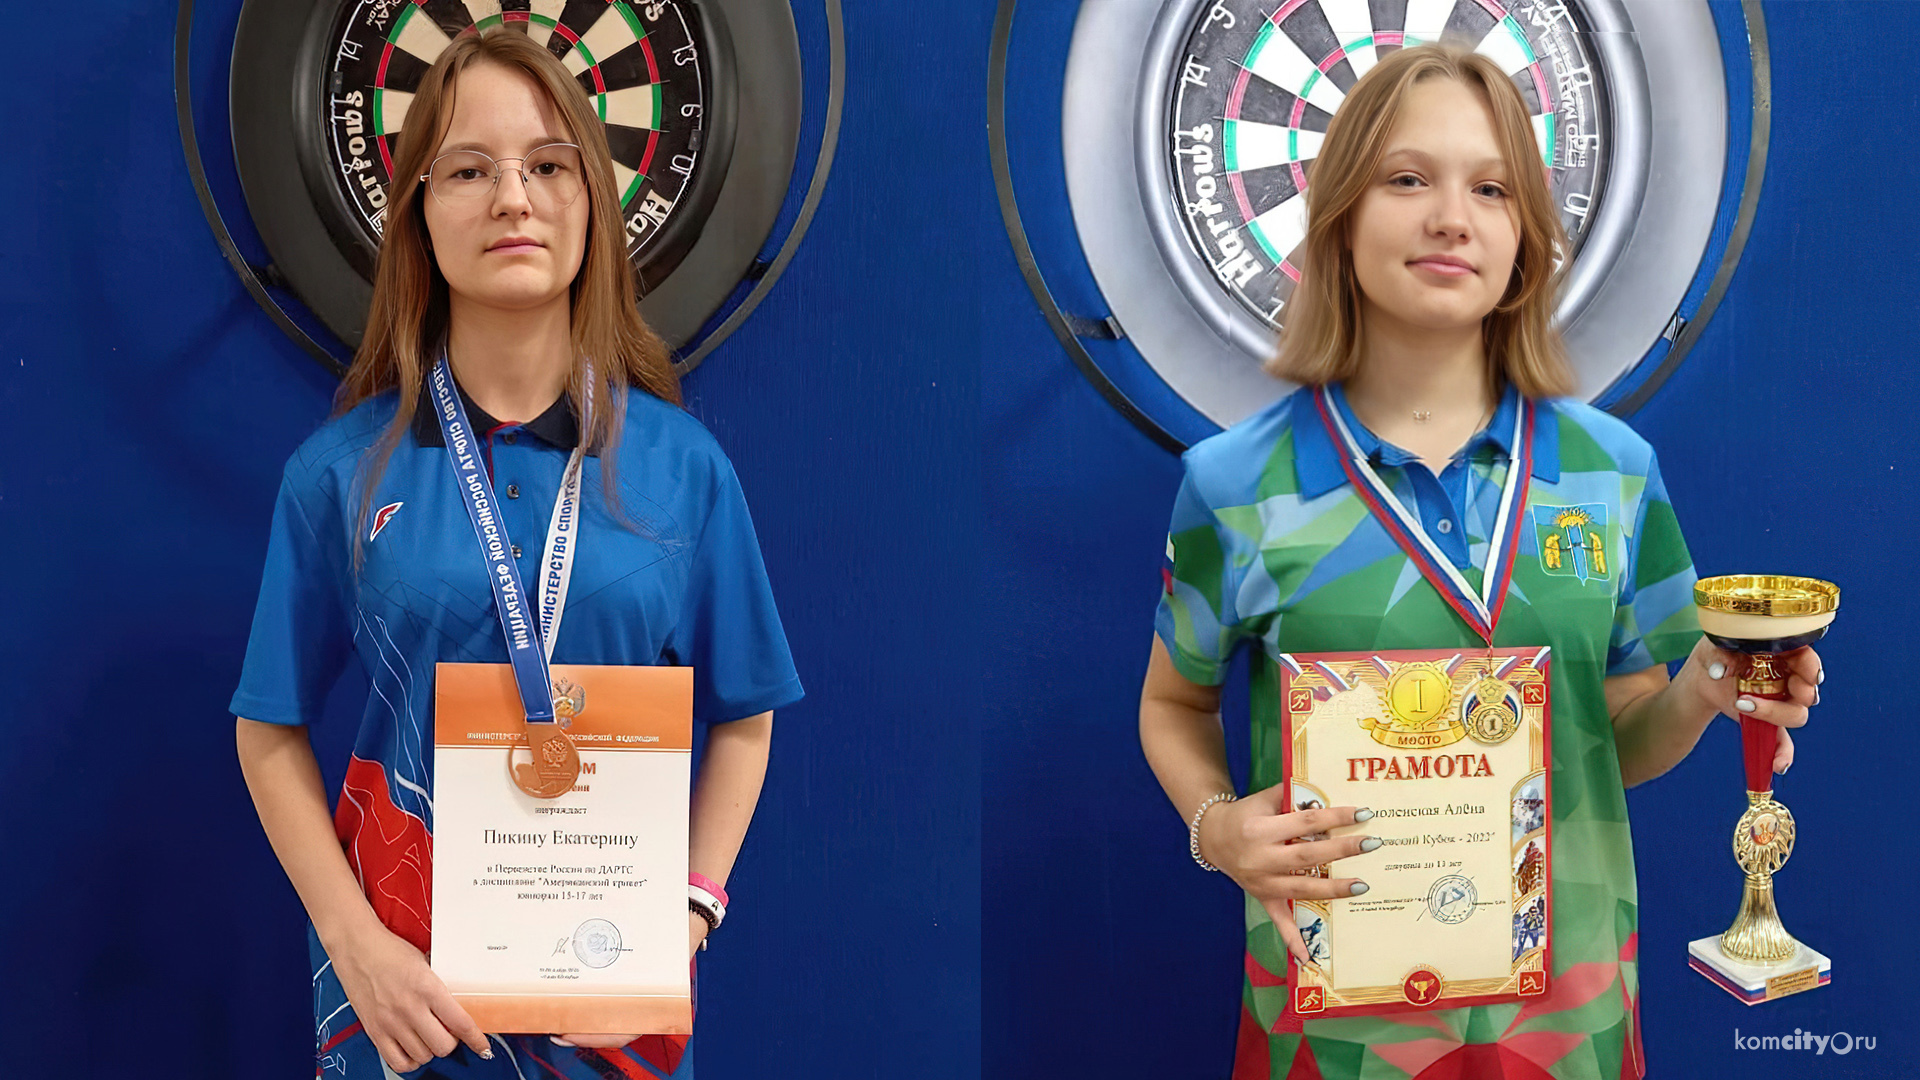 Комсомольчанки вернулись с медалями с соревнований по дартсу в Санкт-Петербурге